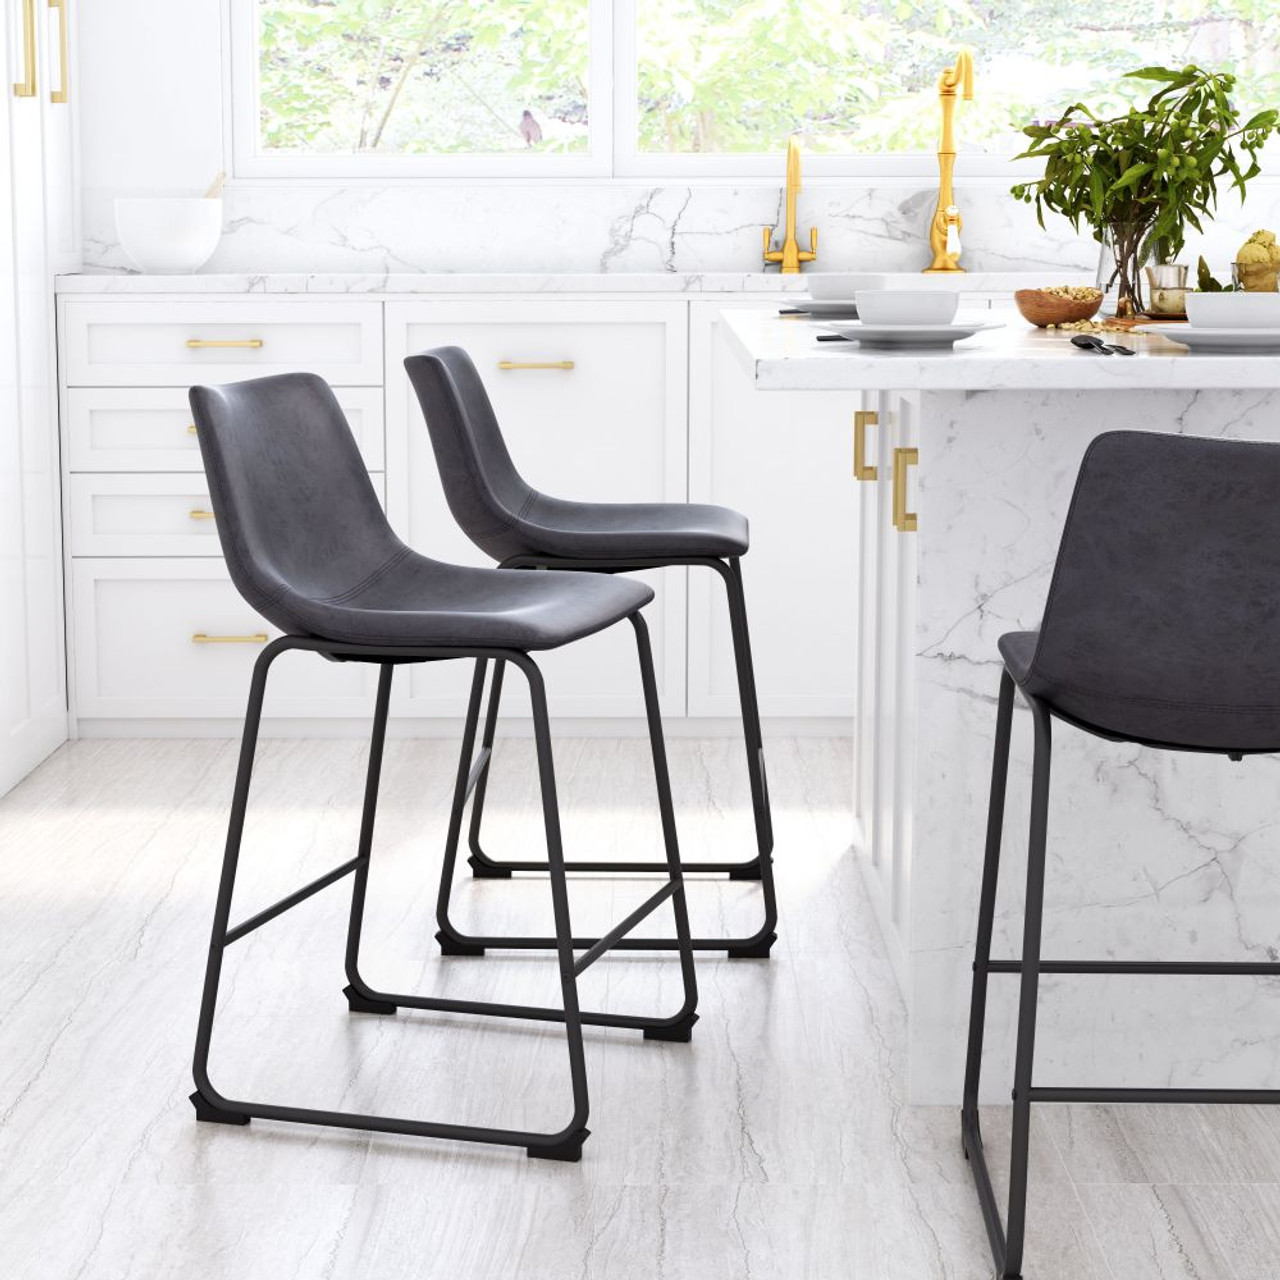 Zuo Modern Smart Counter Chair Charcoal | Travisdavid